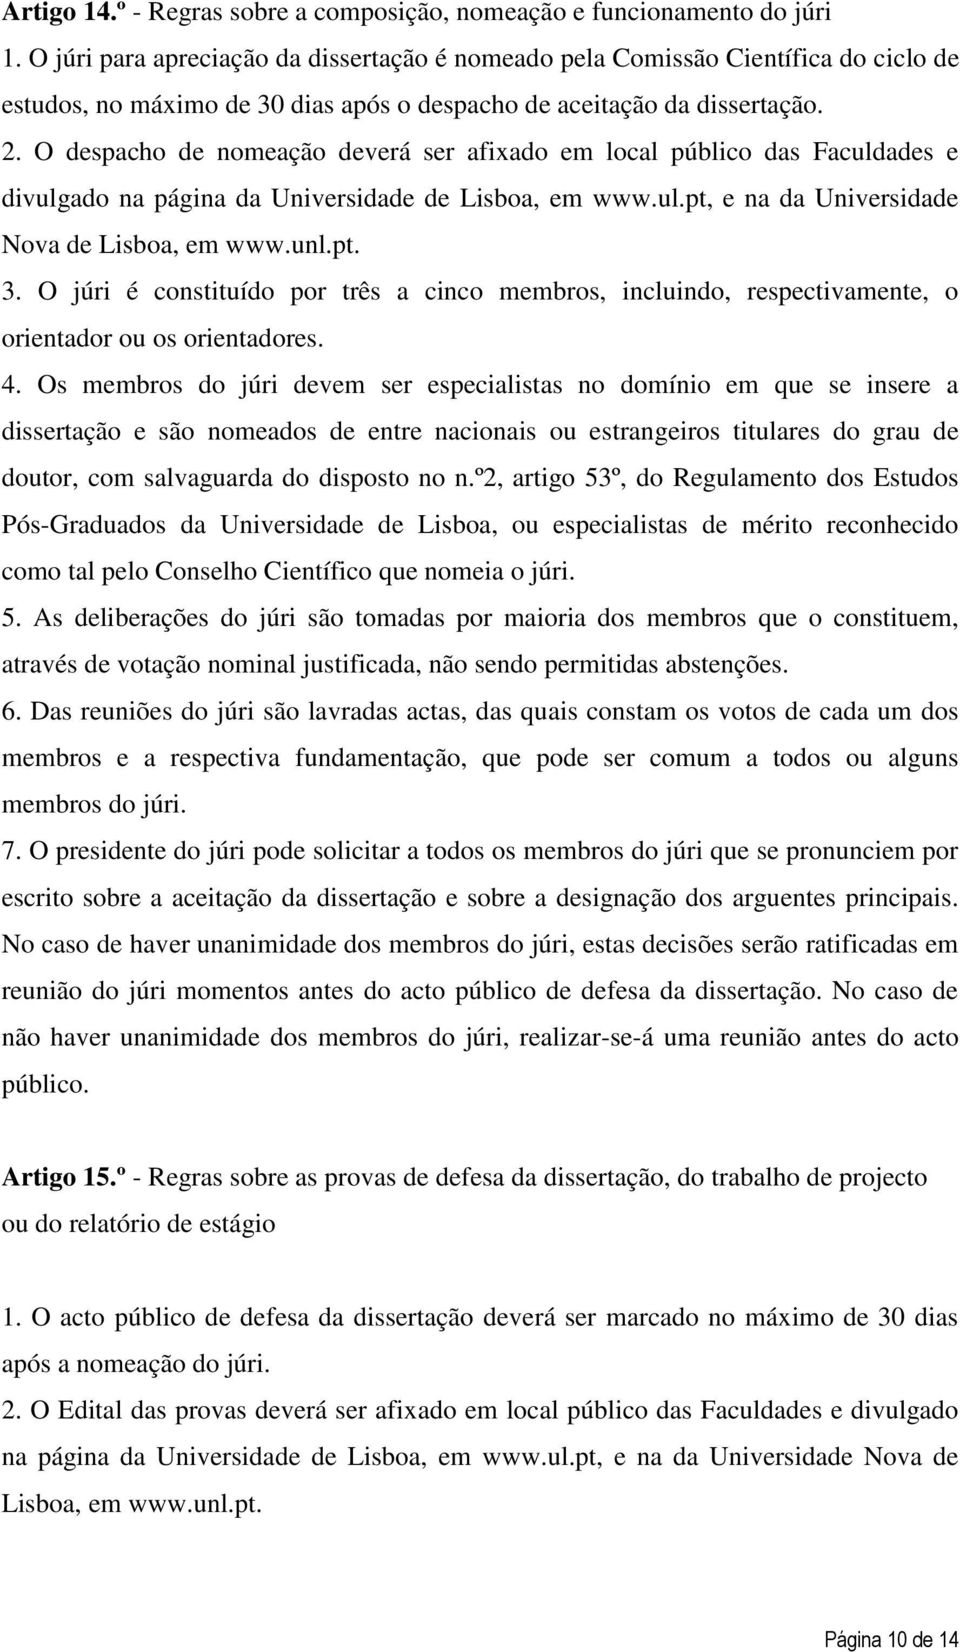 O despacho de nomeação deverá ser afixado em local público das Faculdades e divulgado na página da Universidade de Lisboa, em www.ul.pt, e na da Universidade Nova de Lisboa, em www.unl.pt. 3.